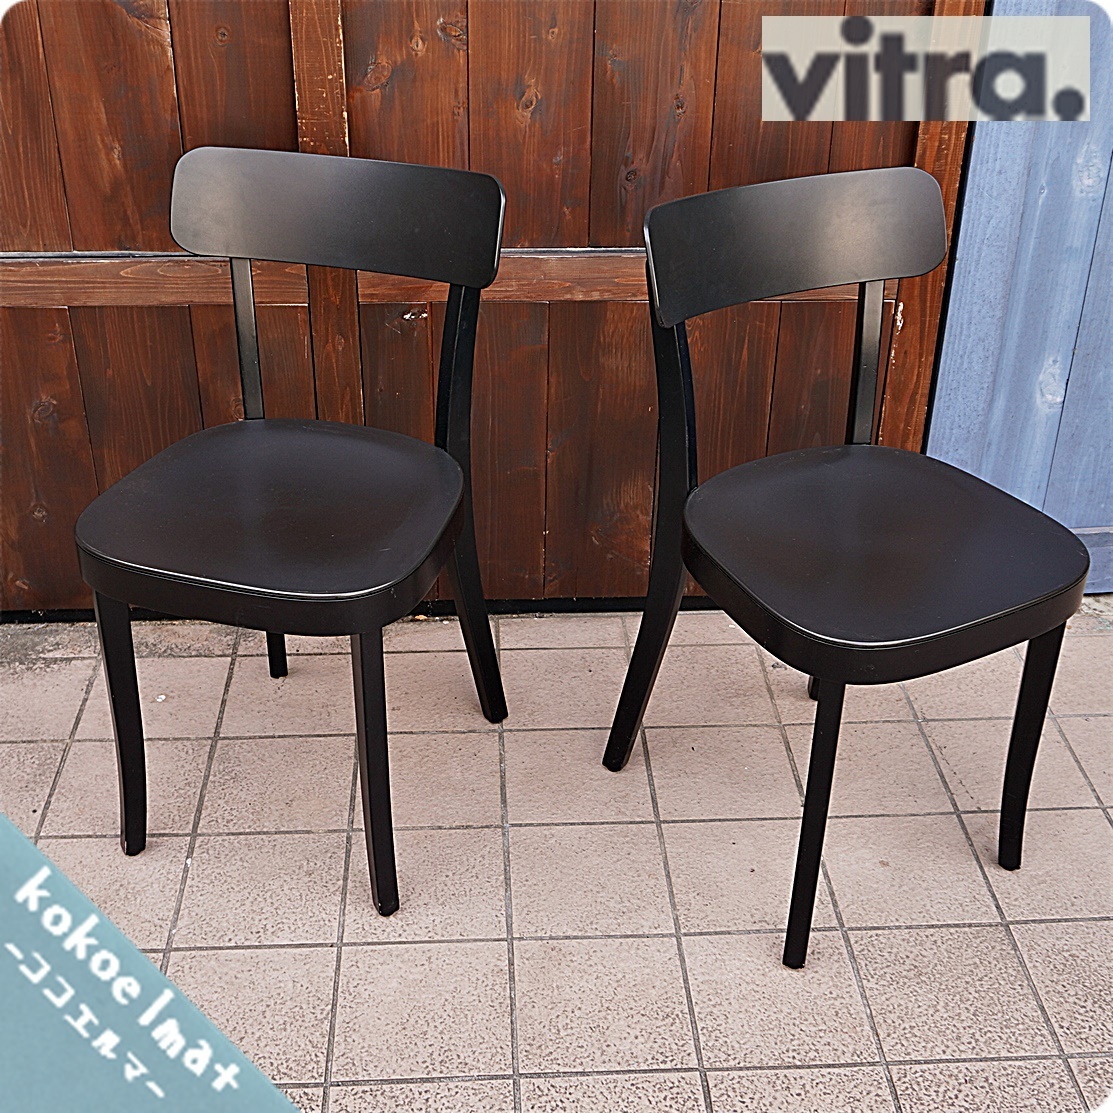 【オンライン限定商品】 Vitra ヴィトラ CA416 ブラック 椅子 サイドチェア モダン シンプル ジャスパー・モリソン 2脚セット ダイニングチェア バーゼル basel ダイニングチェア